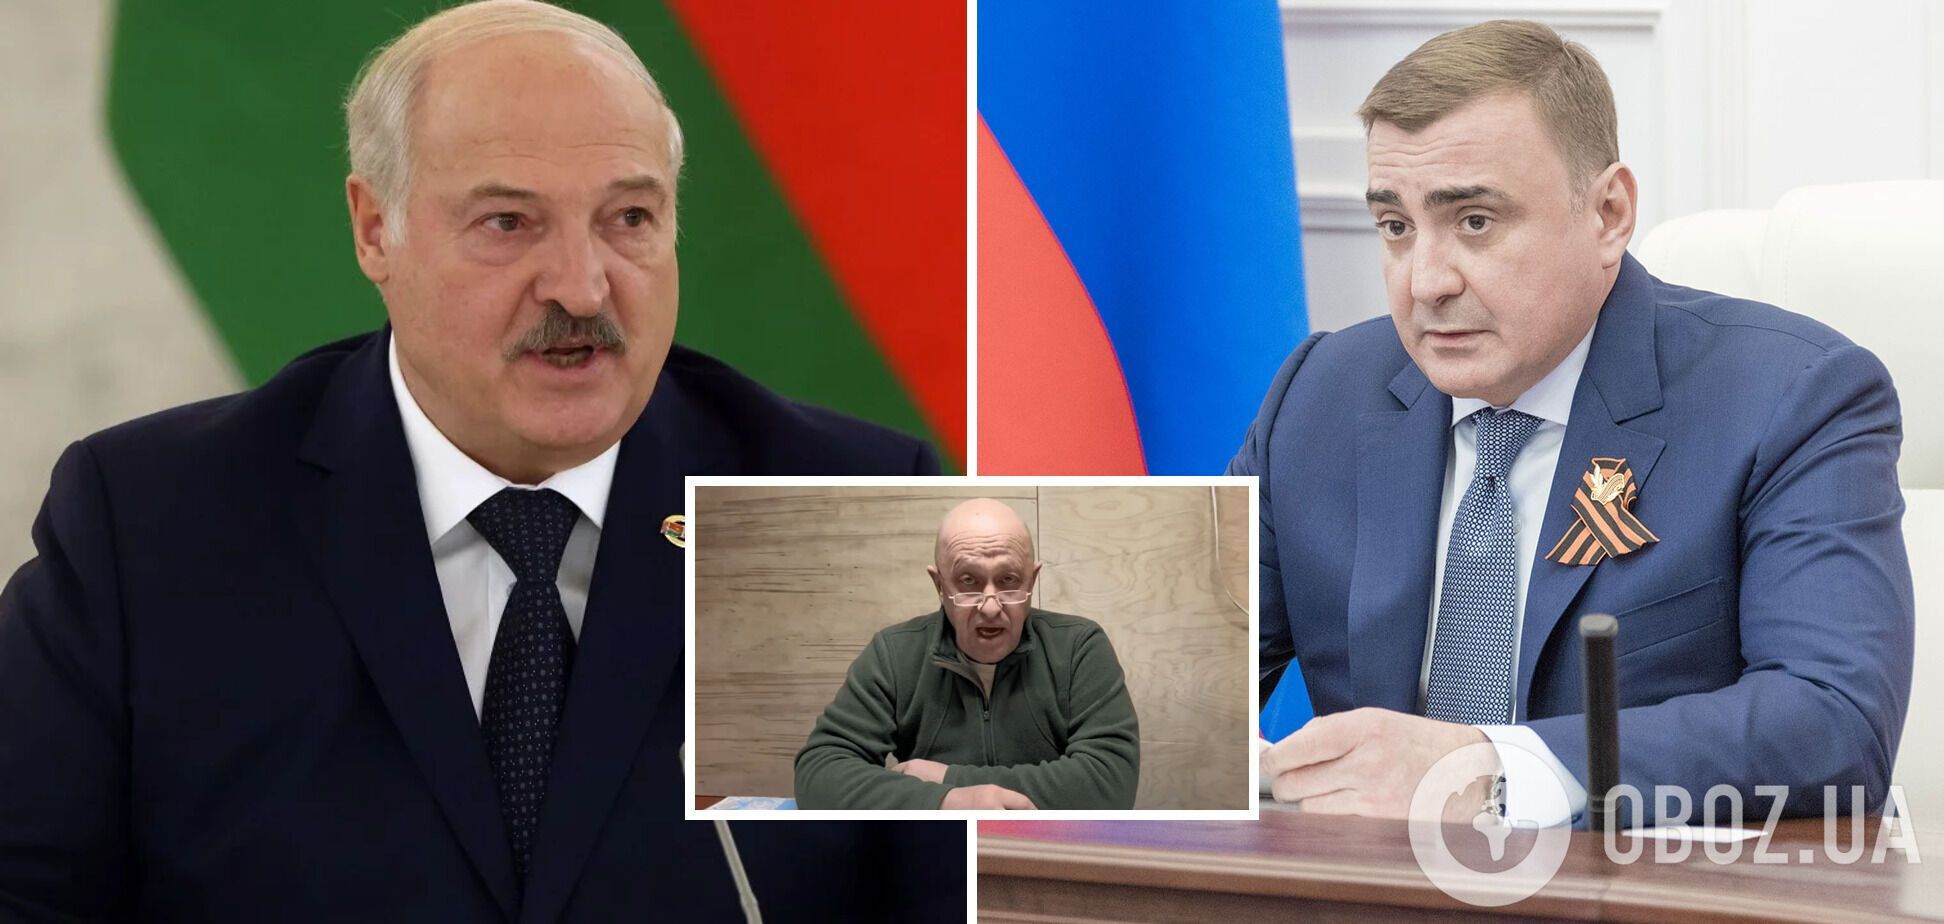 "Лукашенко выступил как ширма": Курносова рассказала, кто на самом деле мог вести переговоры с Пригожиным